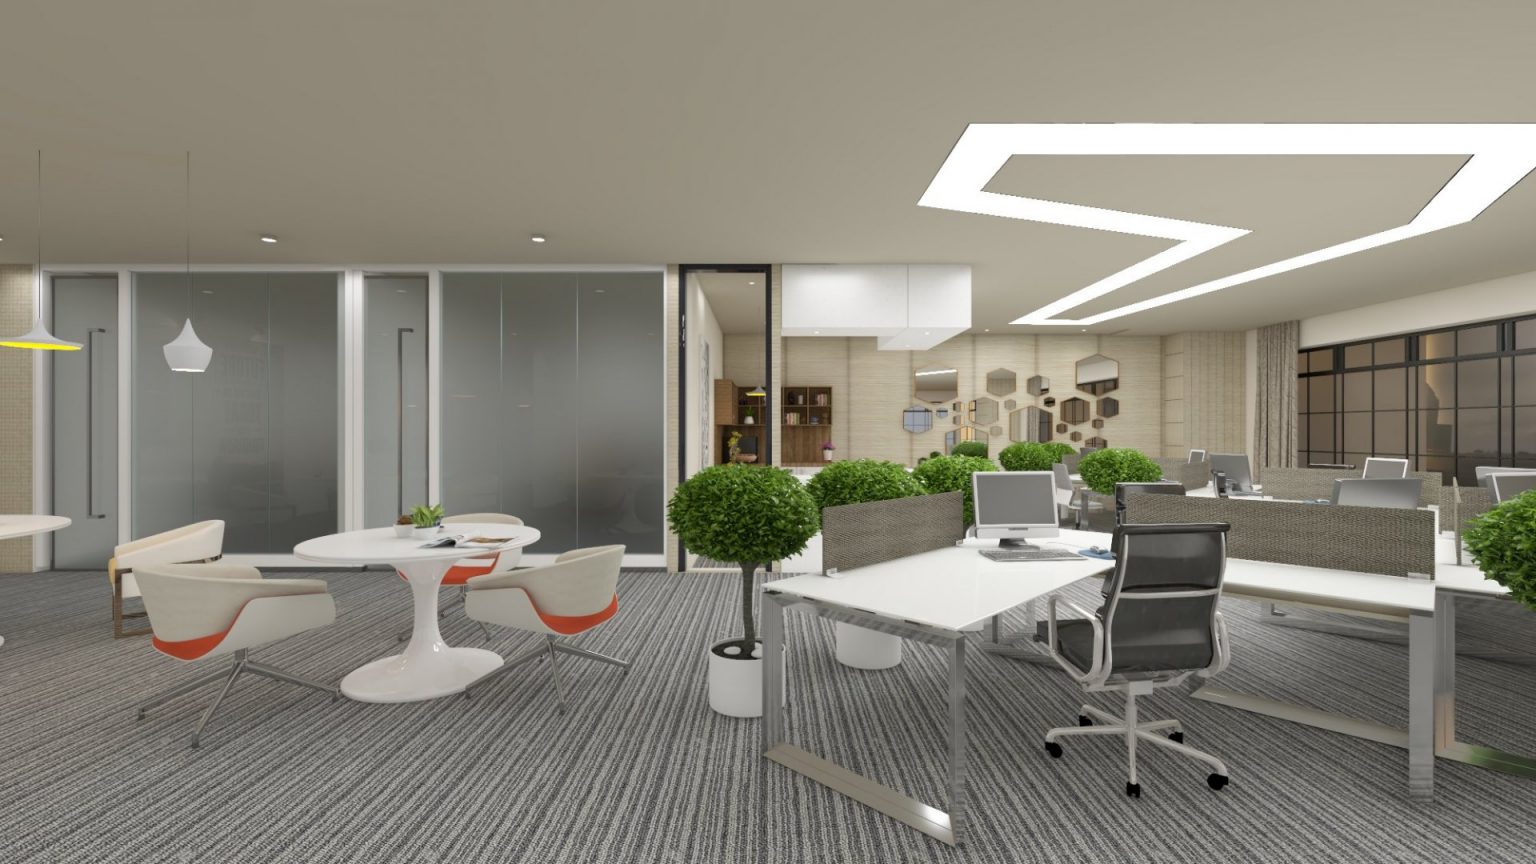 Office Interior Design Space 1536x864 